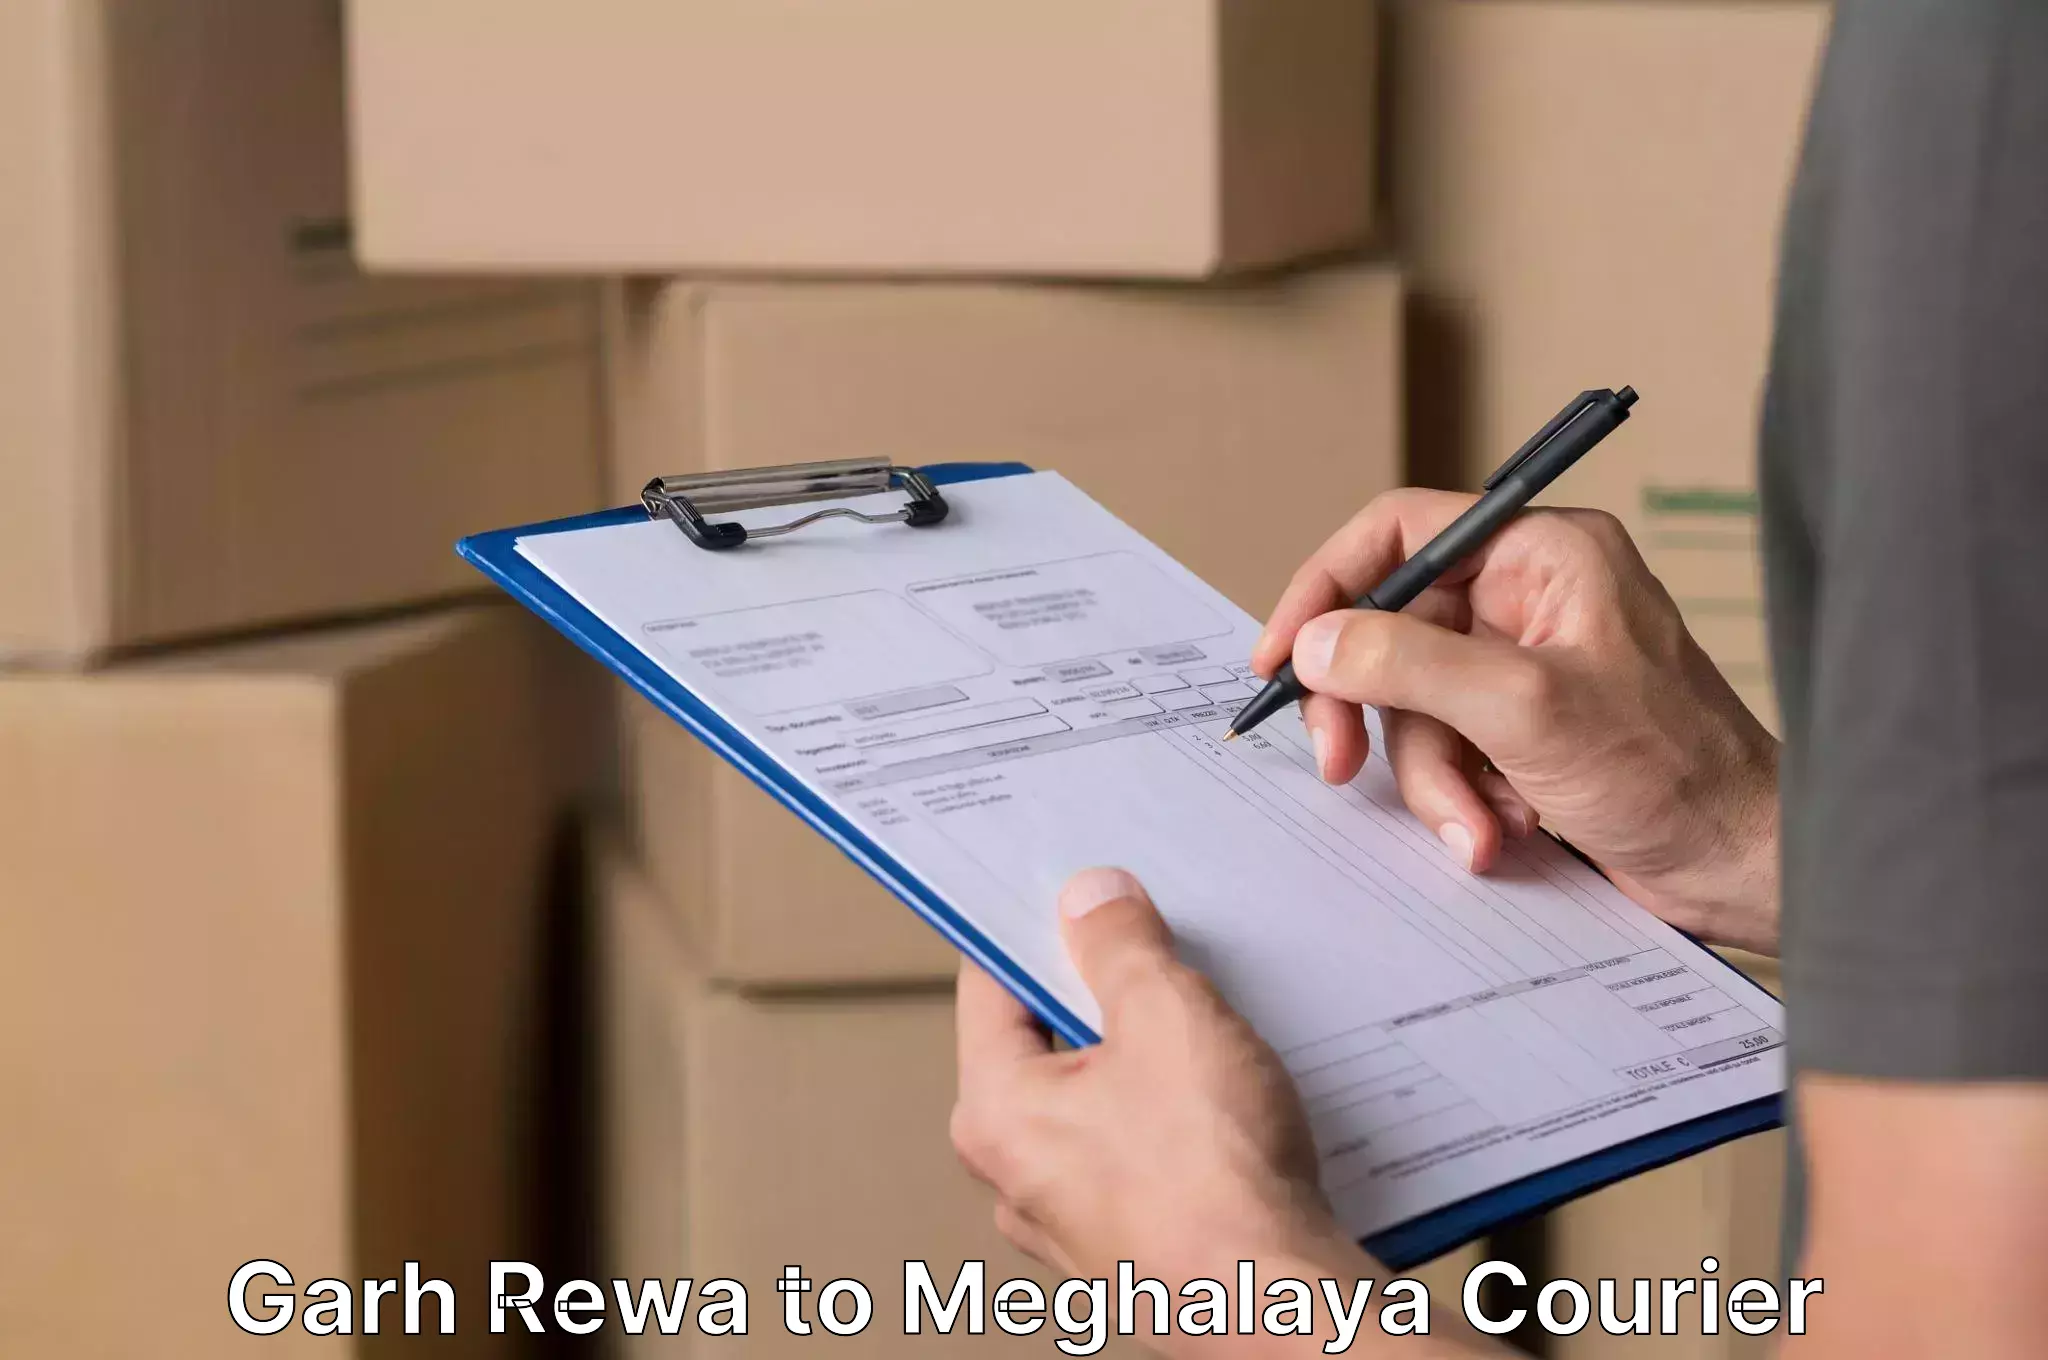 Home goods moving company Garh Rewa to Jaintia Hills